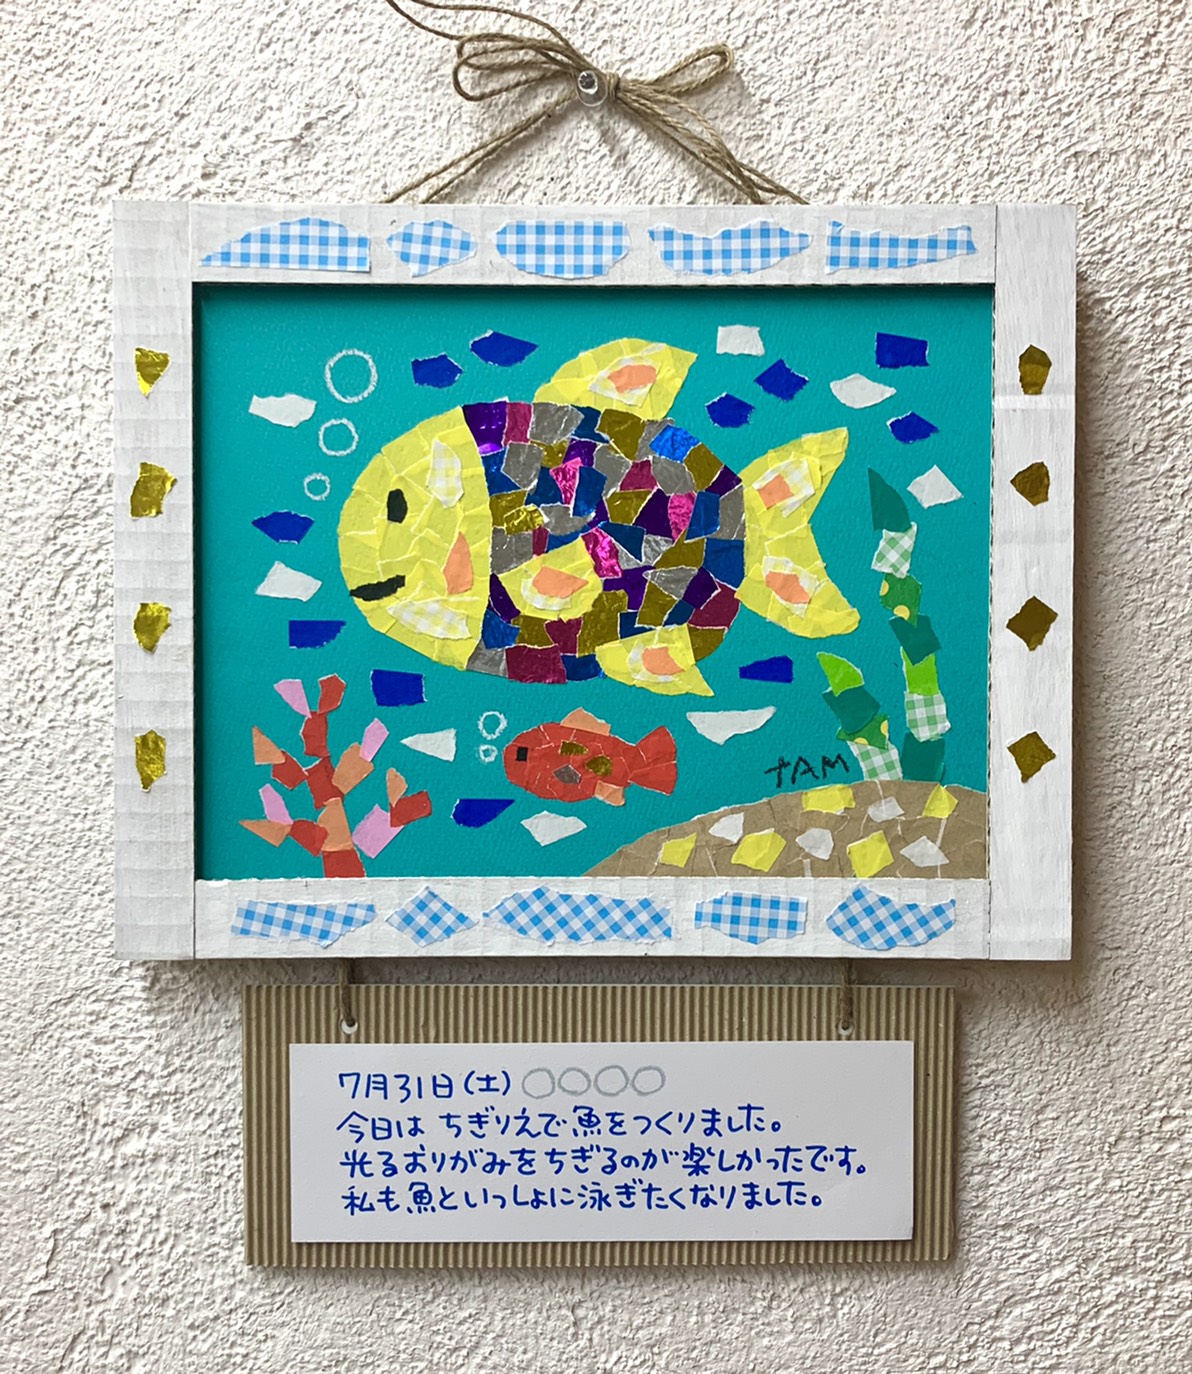 Keittooppi 夏休みの宿題にも 貼り絵で夏の思い出を絵日記風に作ってみよう Keitto ケイット